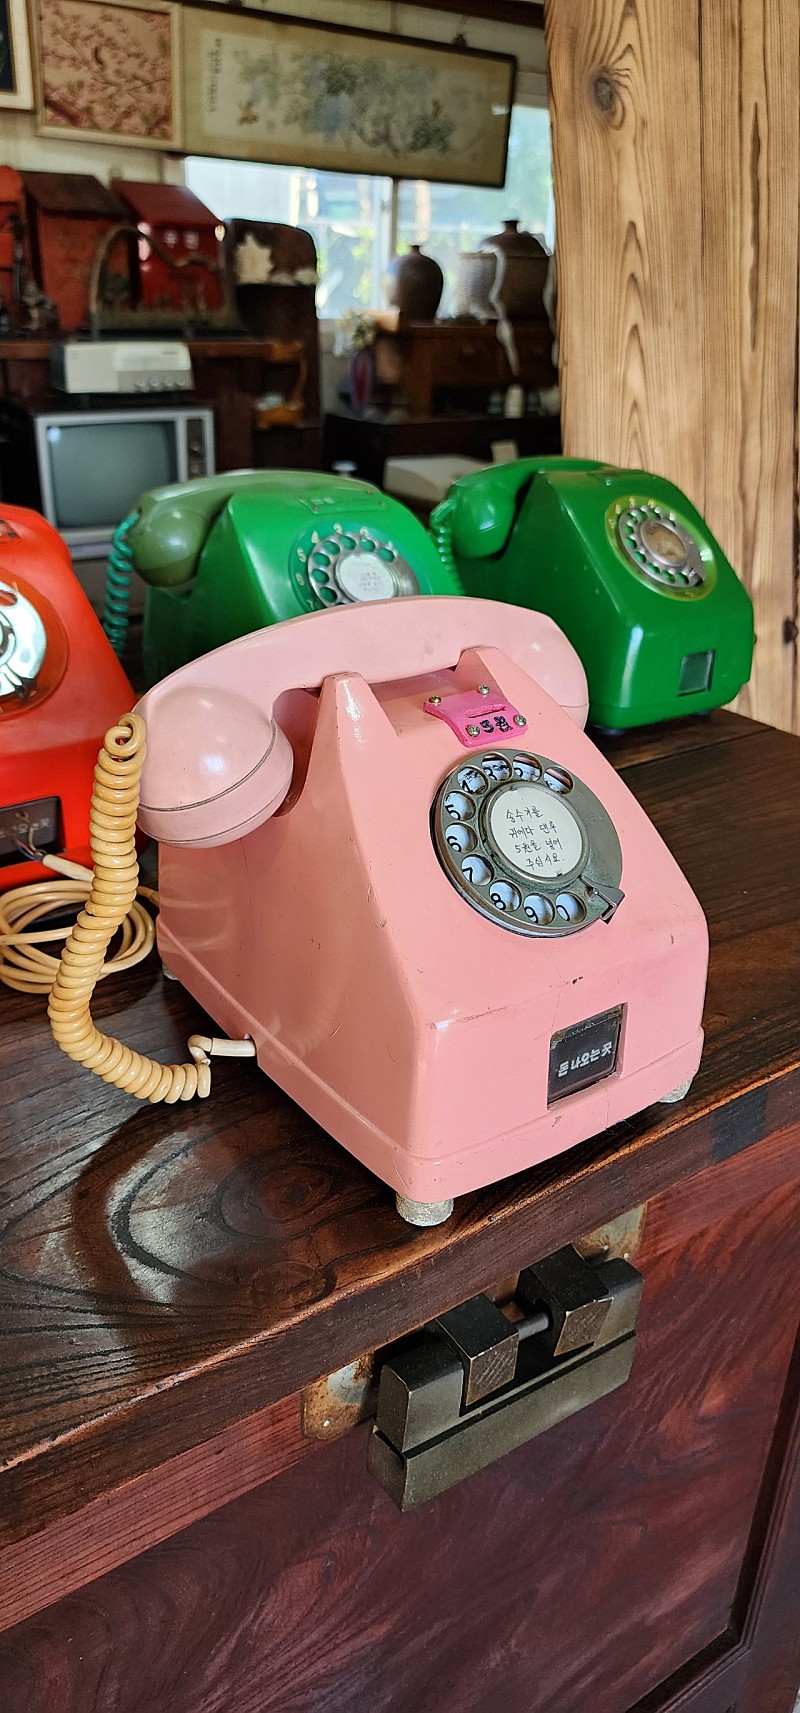 핑크색 다방공중전화기